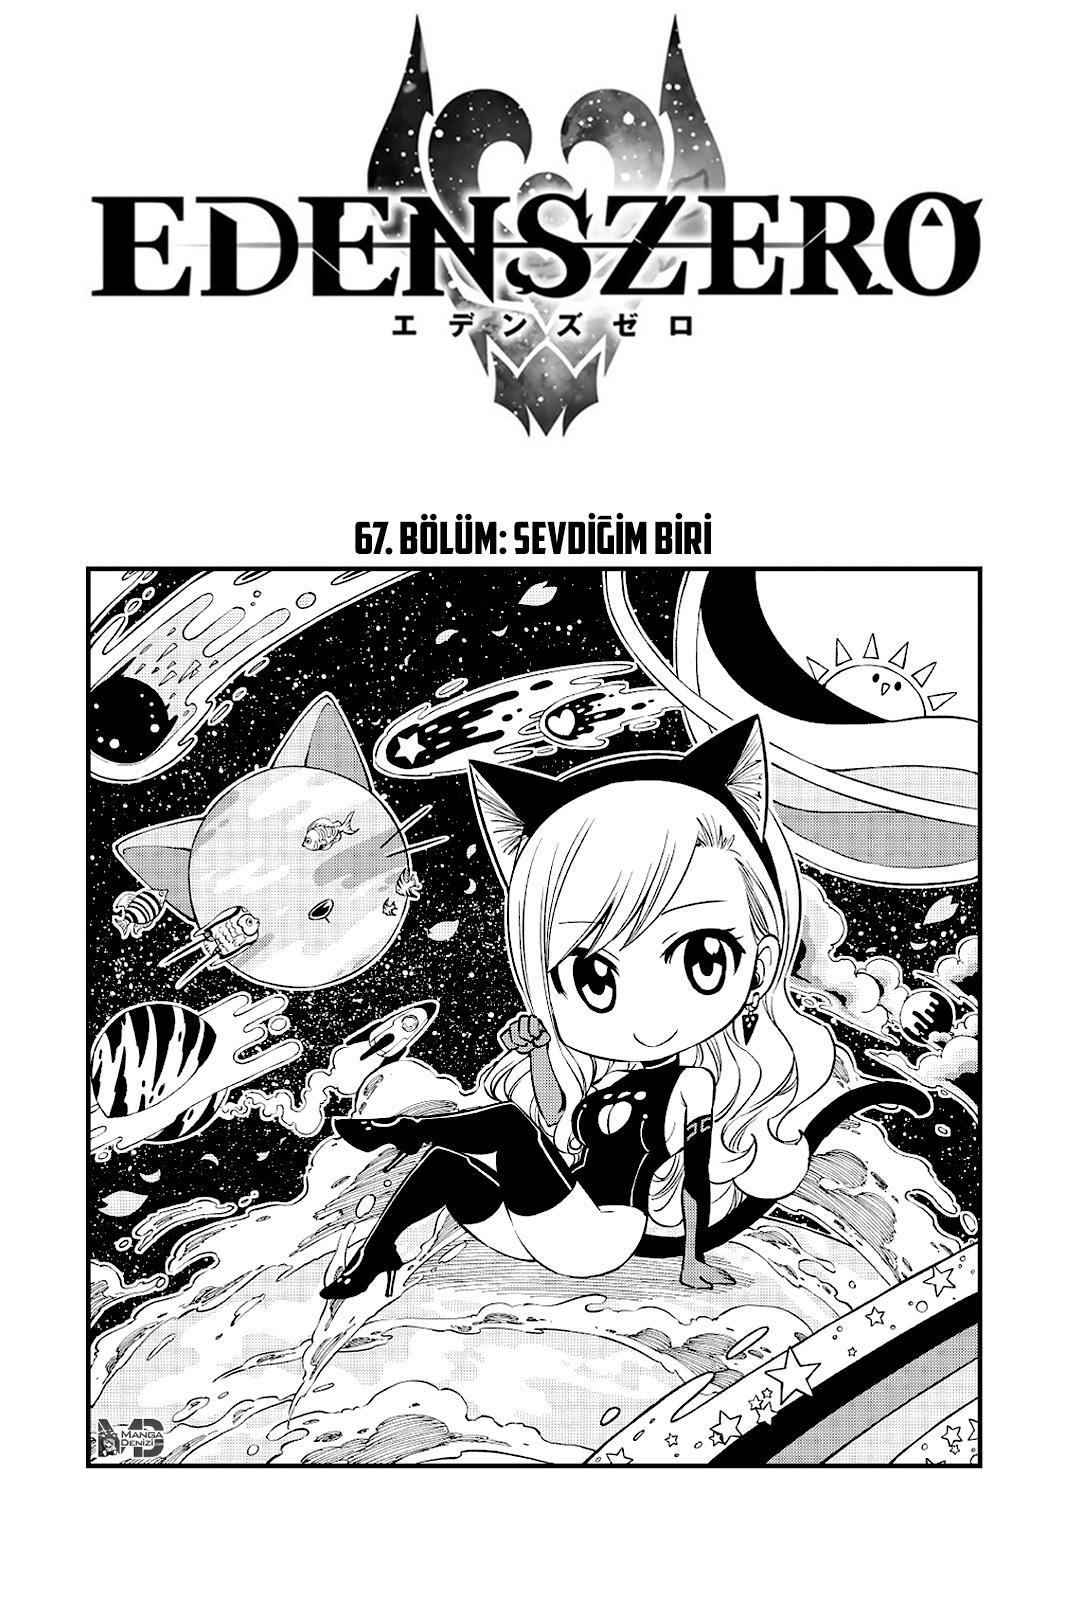 Eden's Zero mangasının 067 bölümünün 2. sayfasını okuyorsunuz.